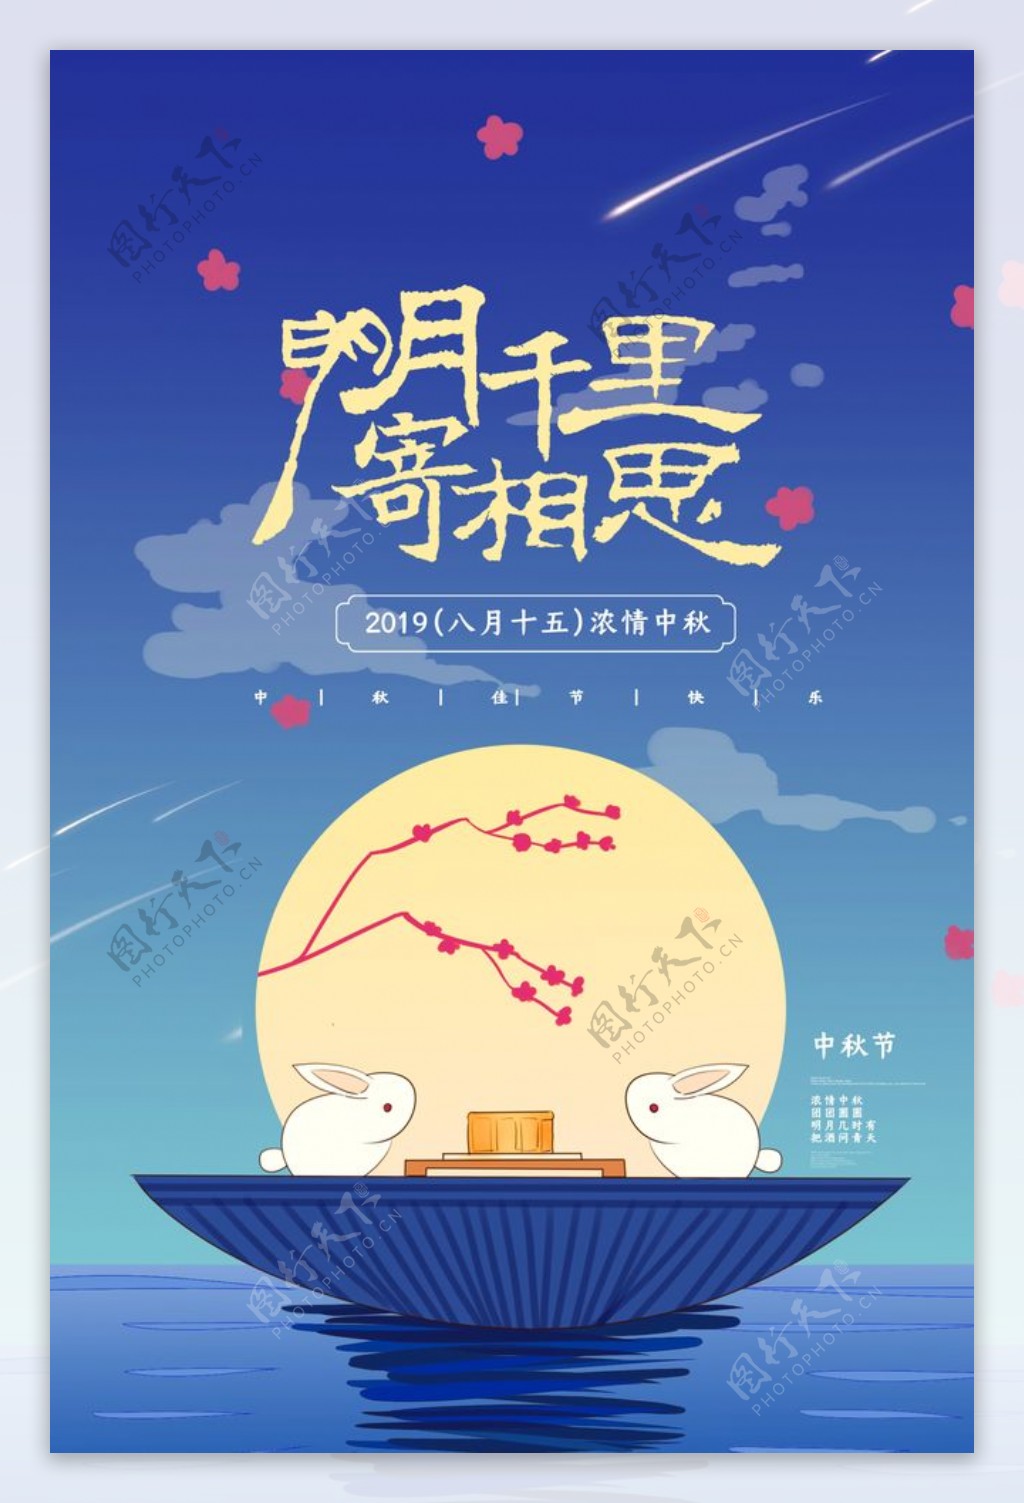 中秋传统节日活动促销海报